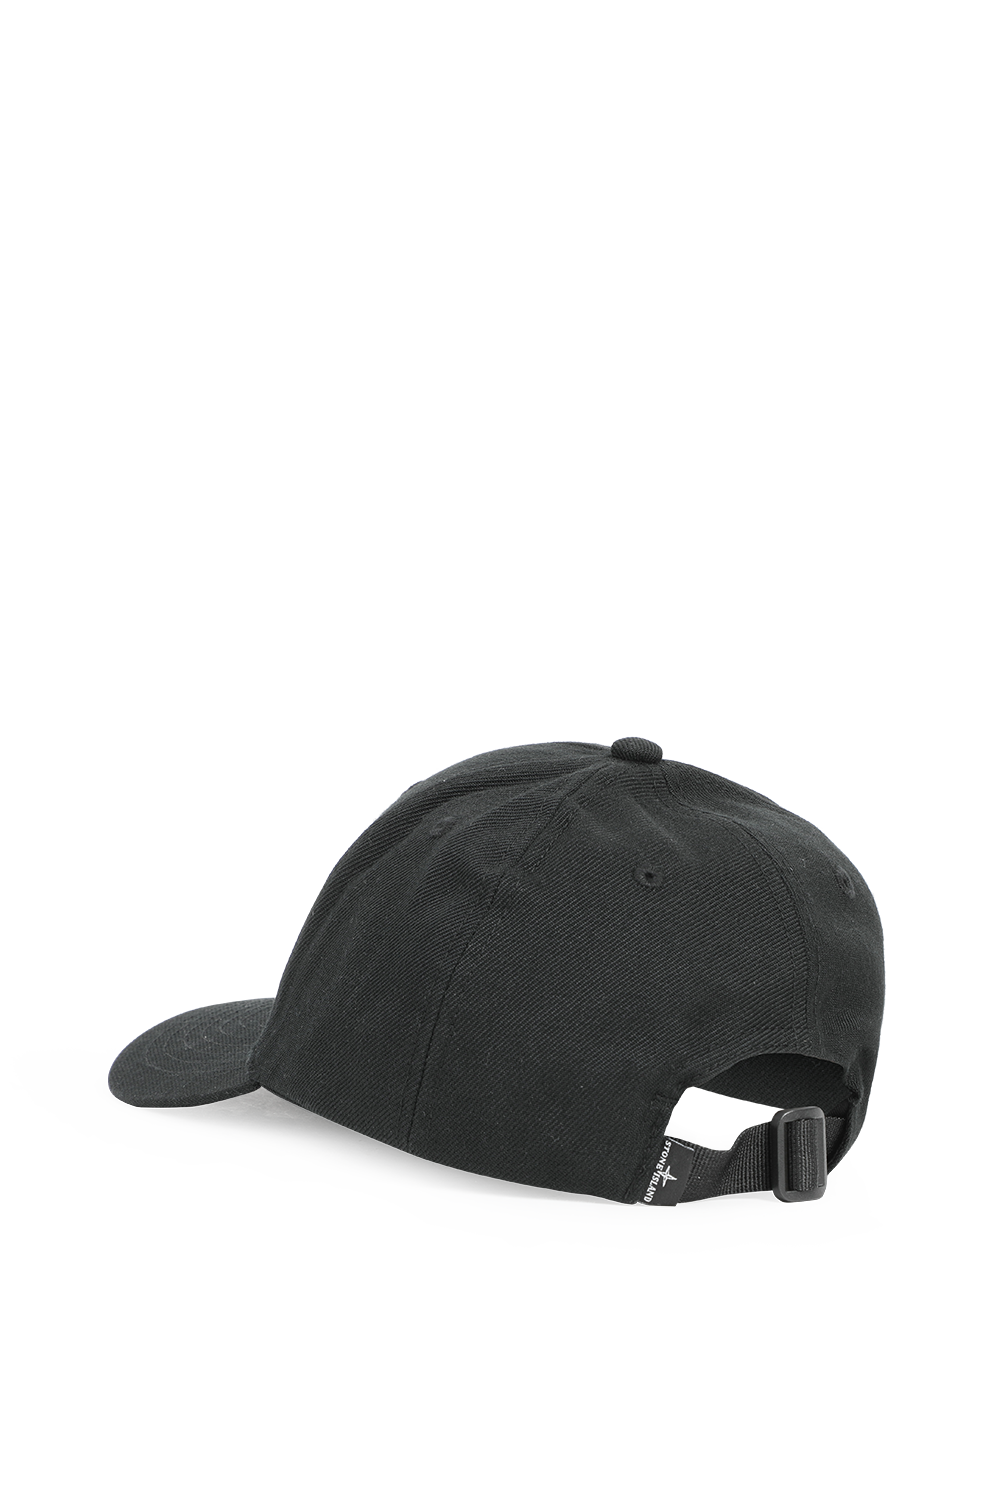 כובע בייסבול עם לוגו רקום בגוון שחור STONE ISLAND